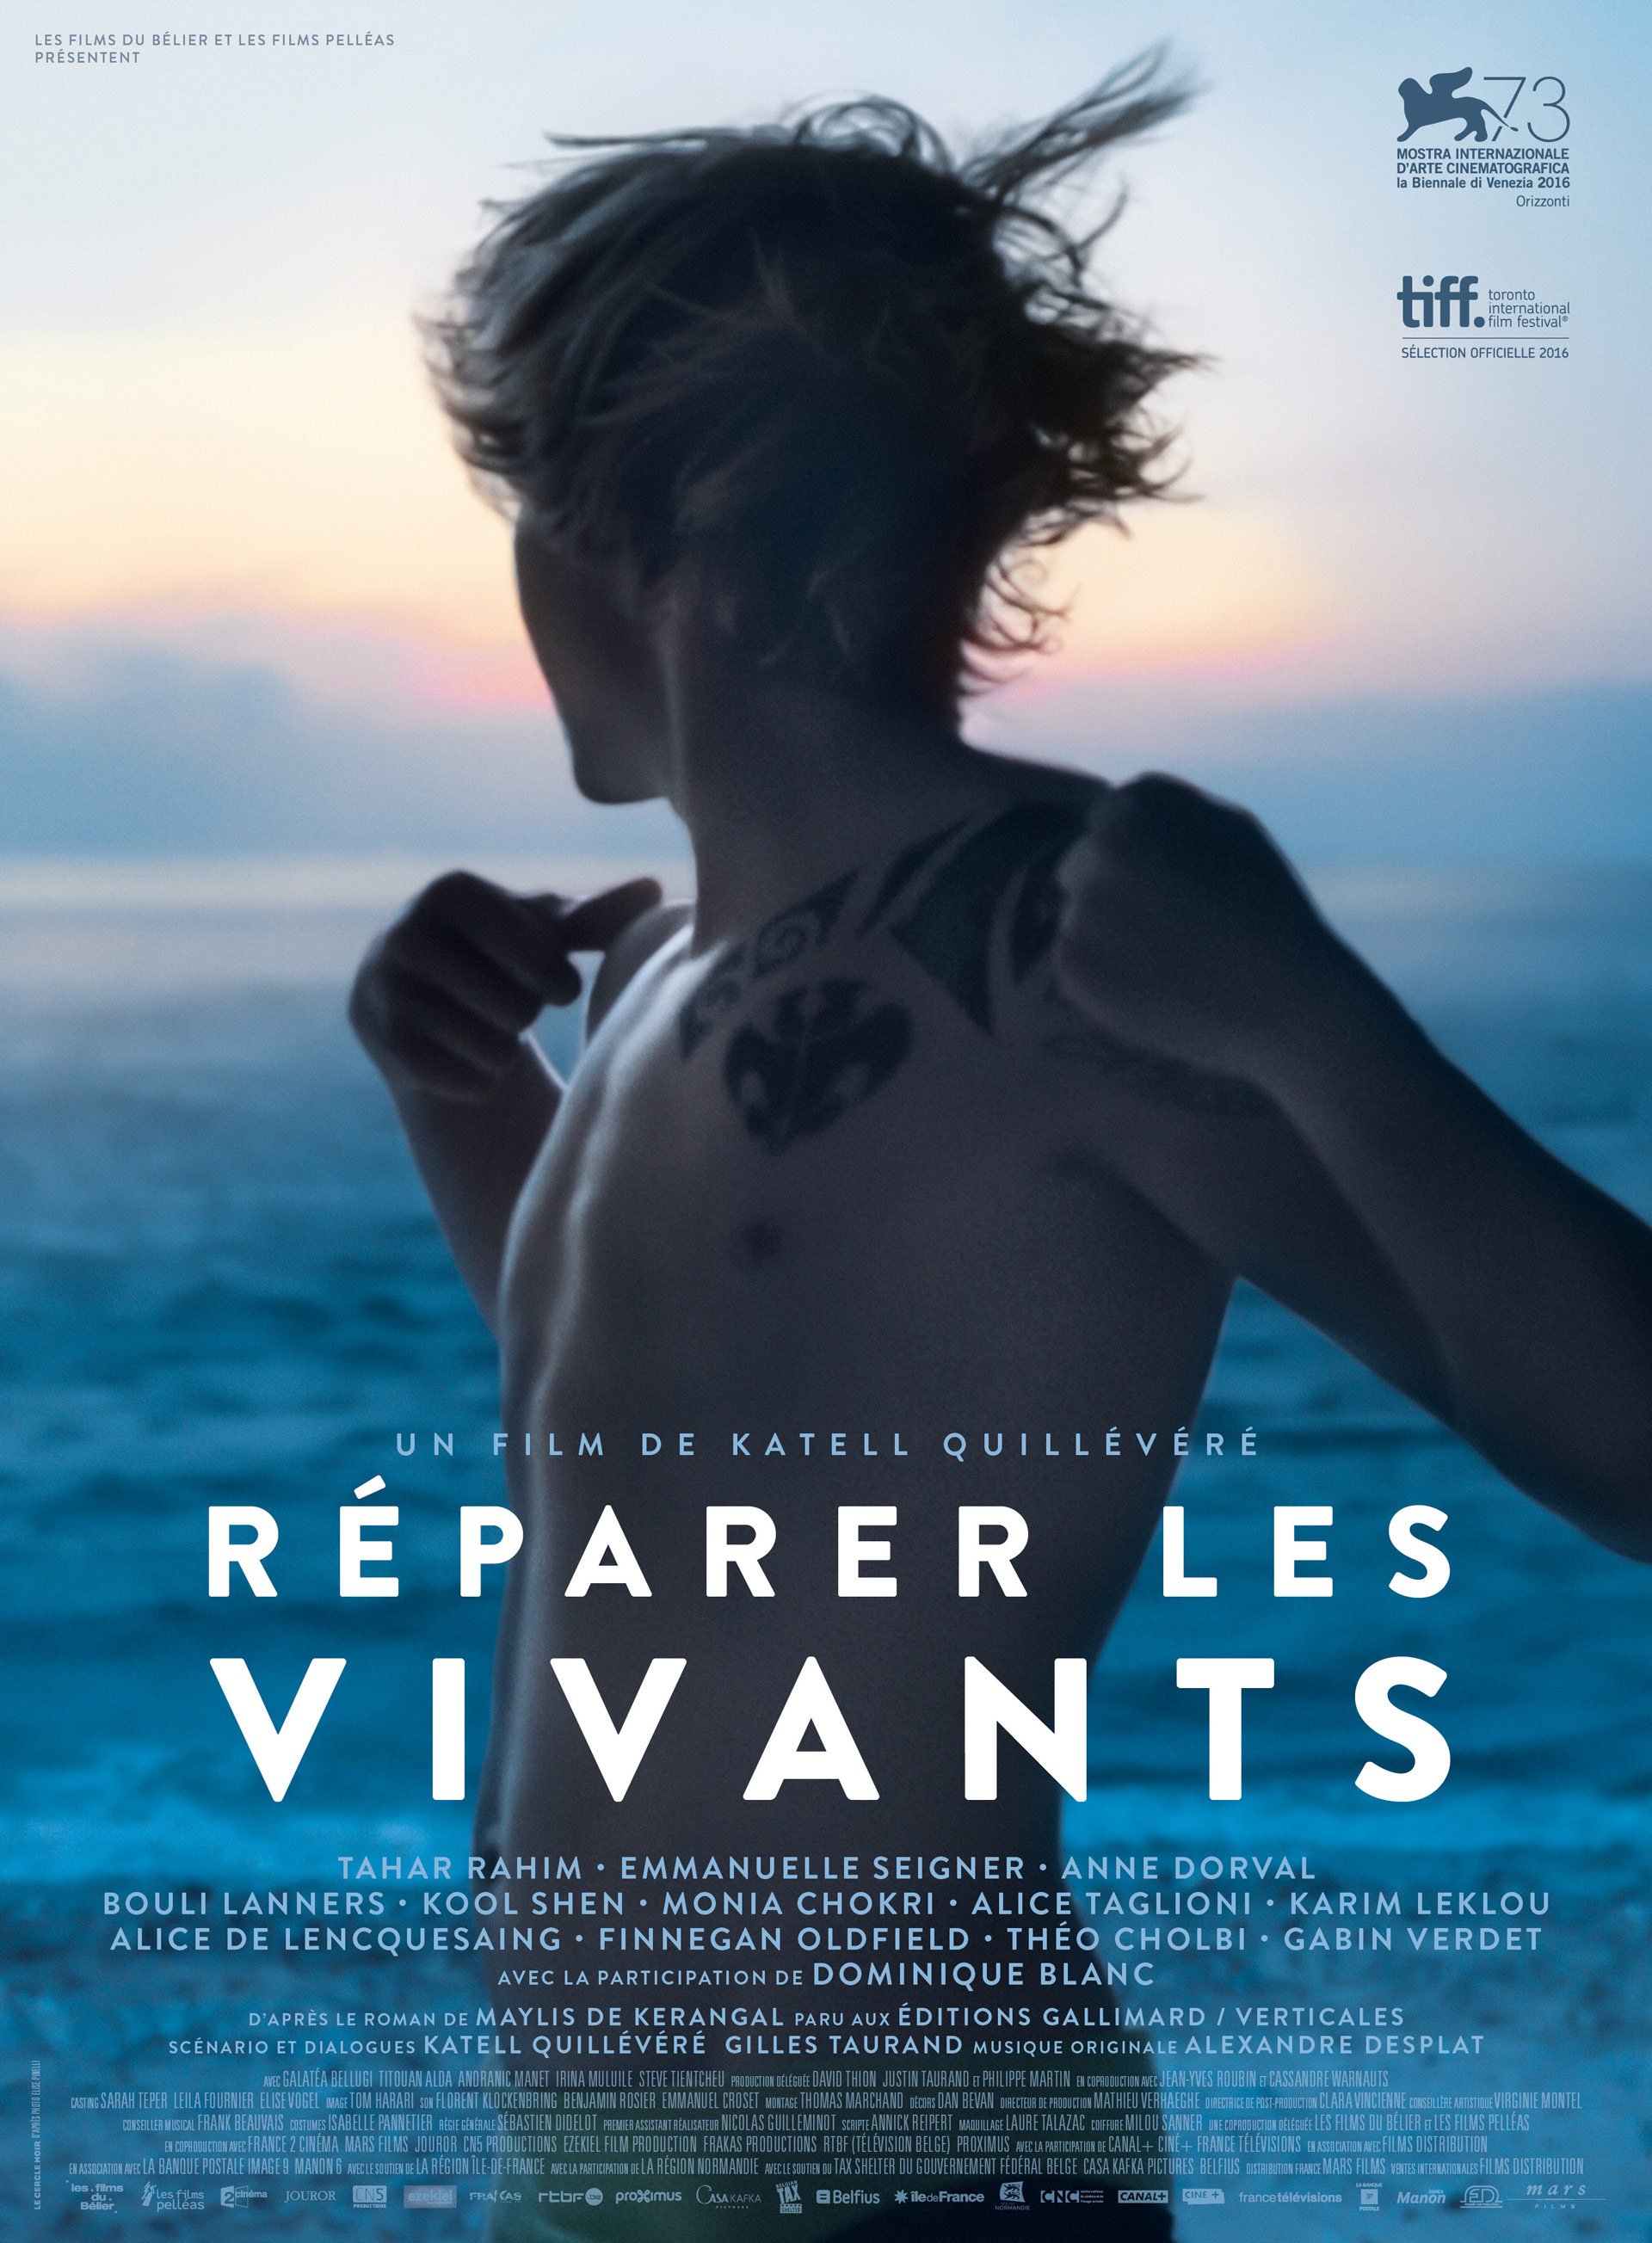 Réparer Les Vivants en Blu Ray : Réparer les vivants - Blu-ray +